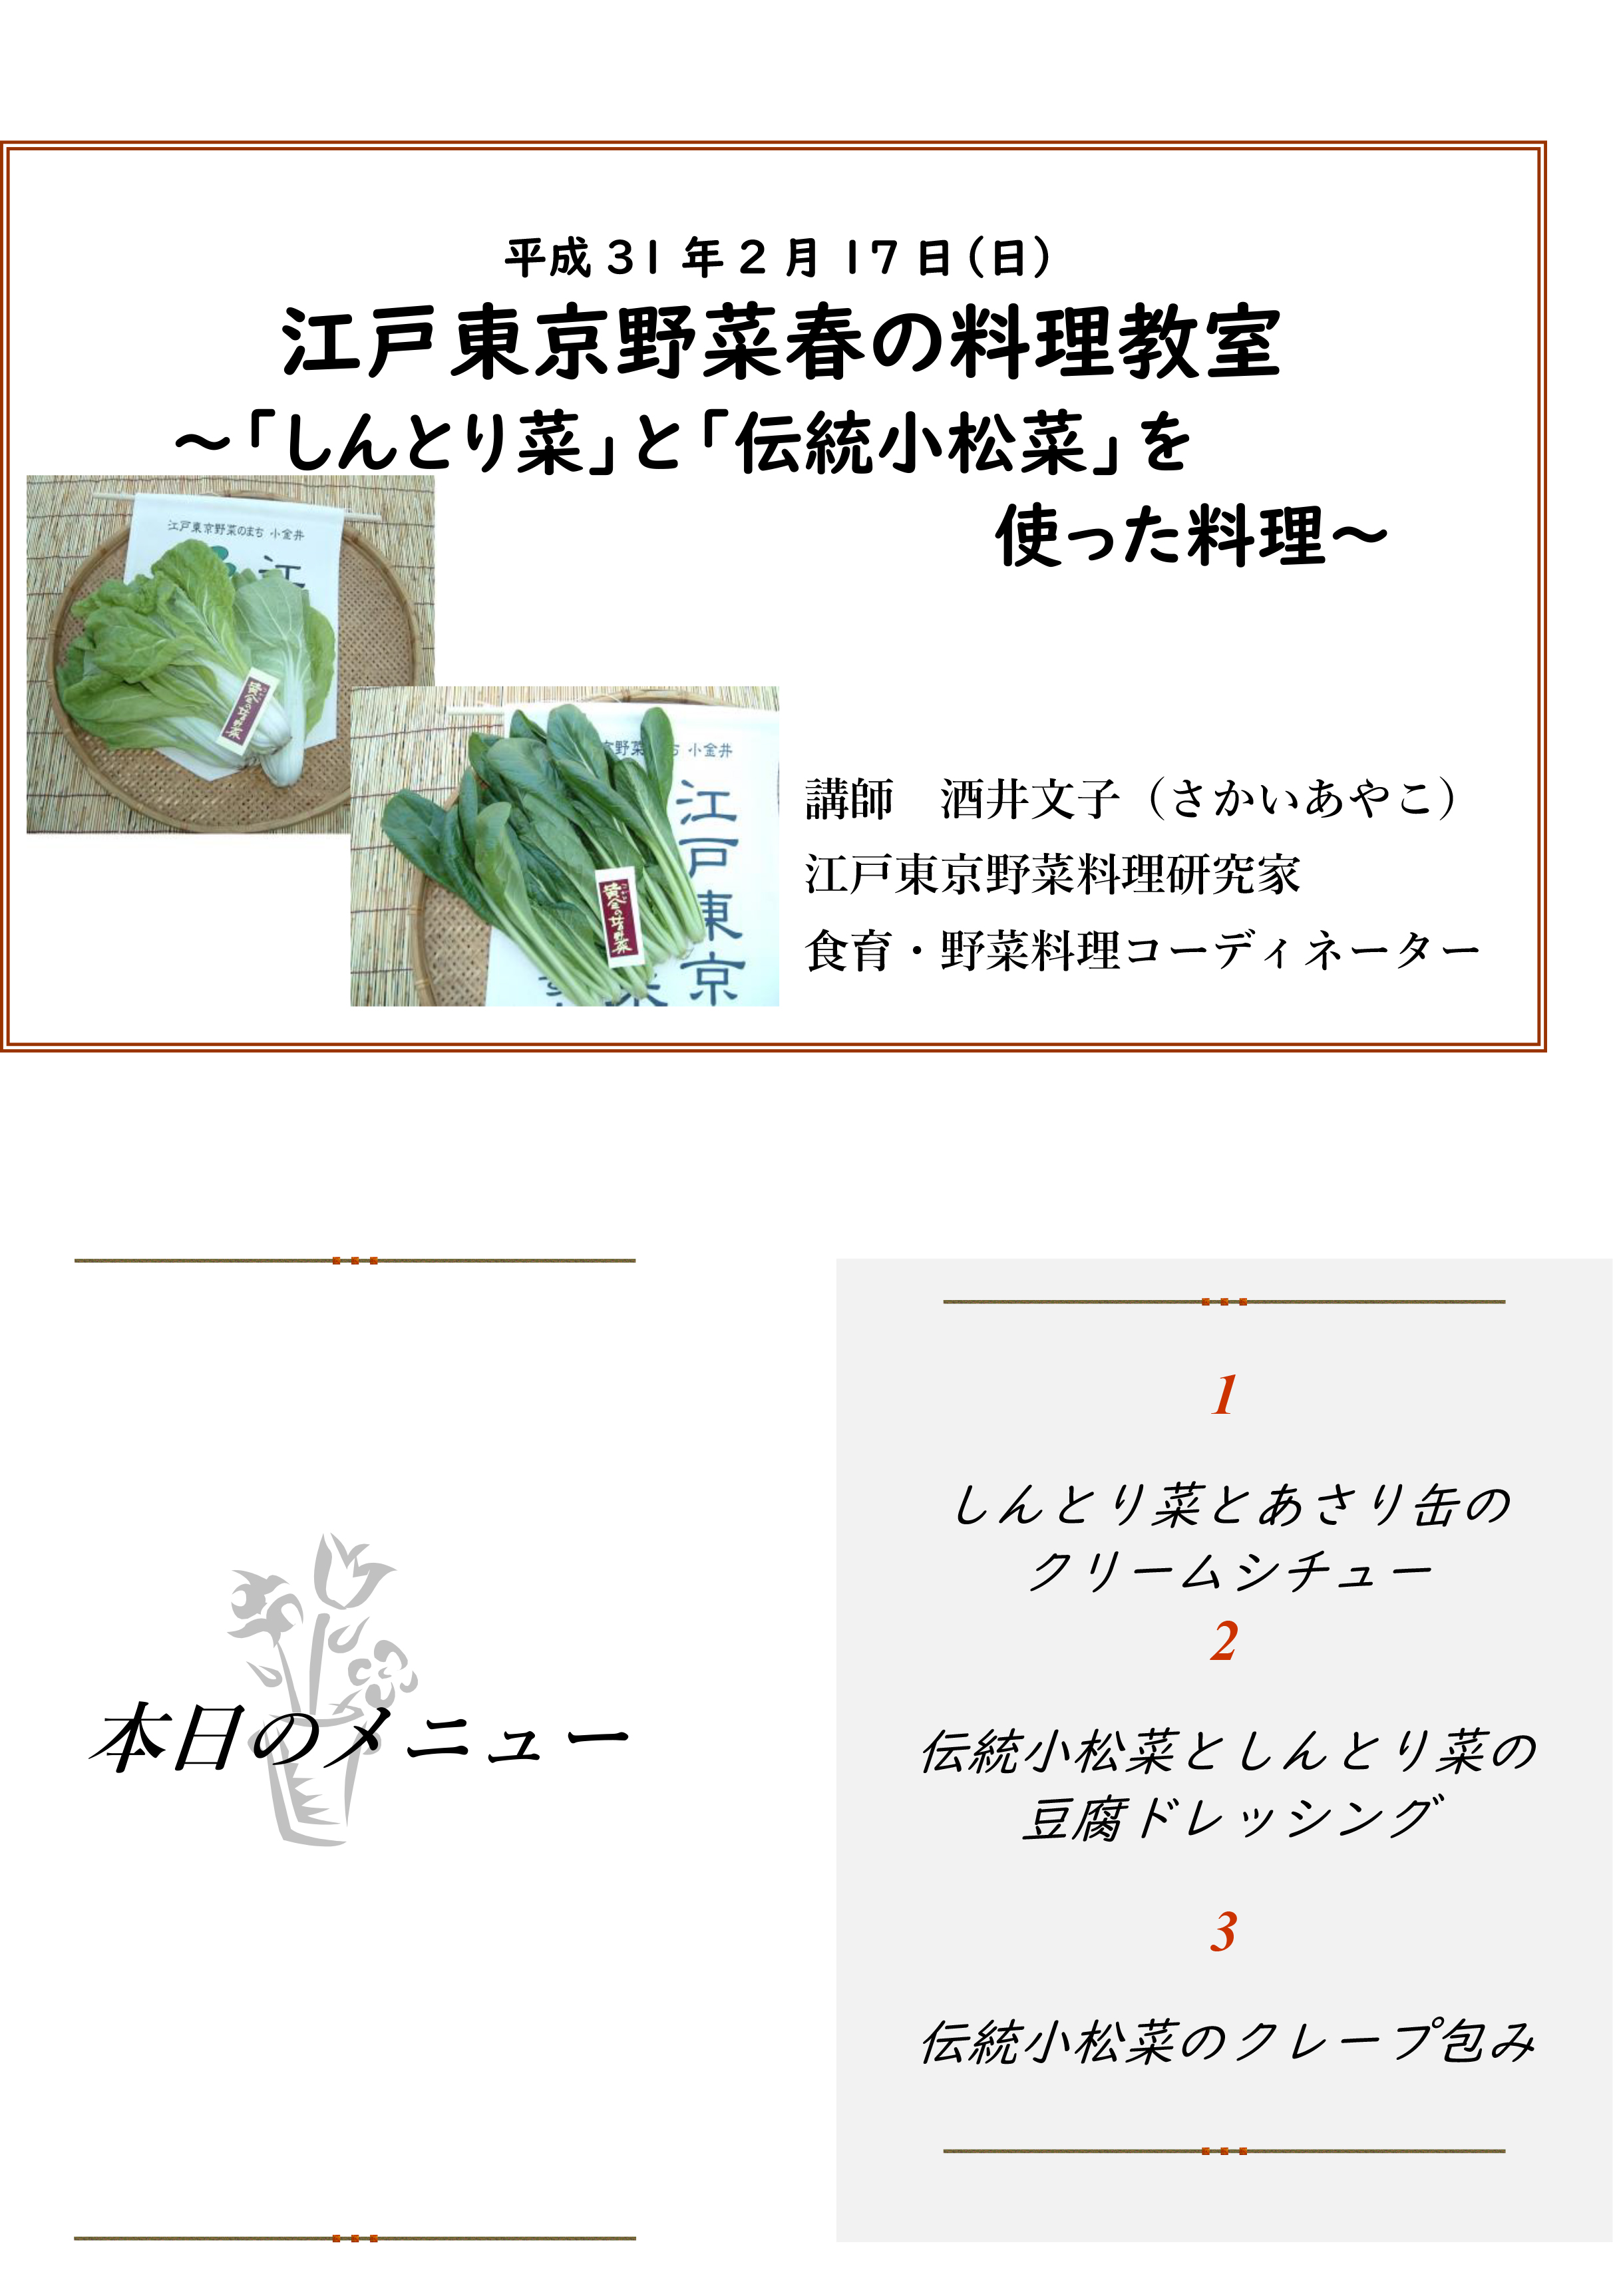 江戸東京野菜春の料理教室 シントリ菜 と 伝統小松菜 を使った料理 小金井市観光まちおこし協会